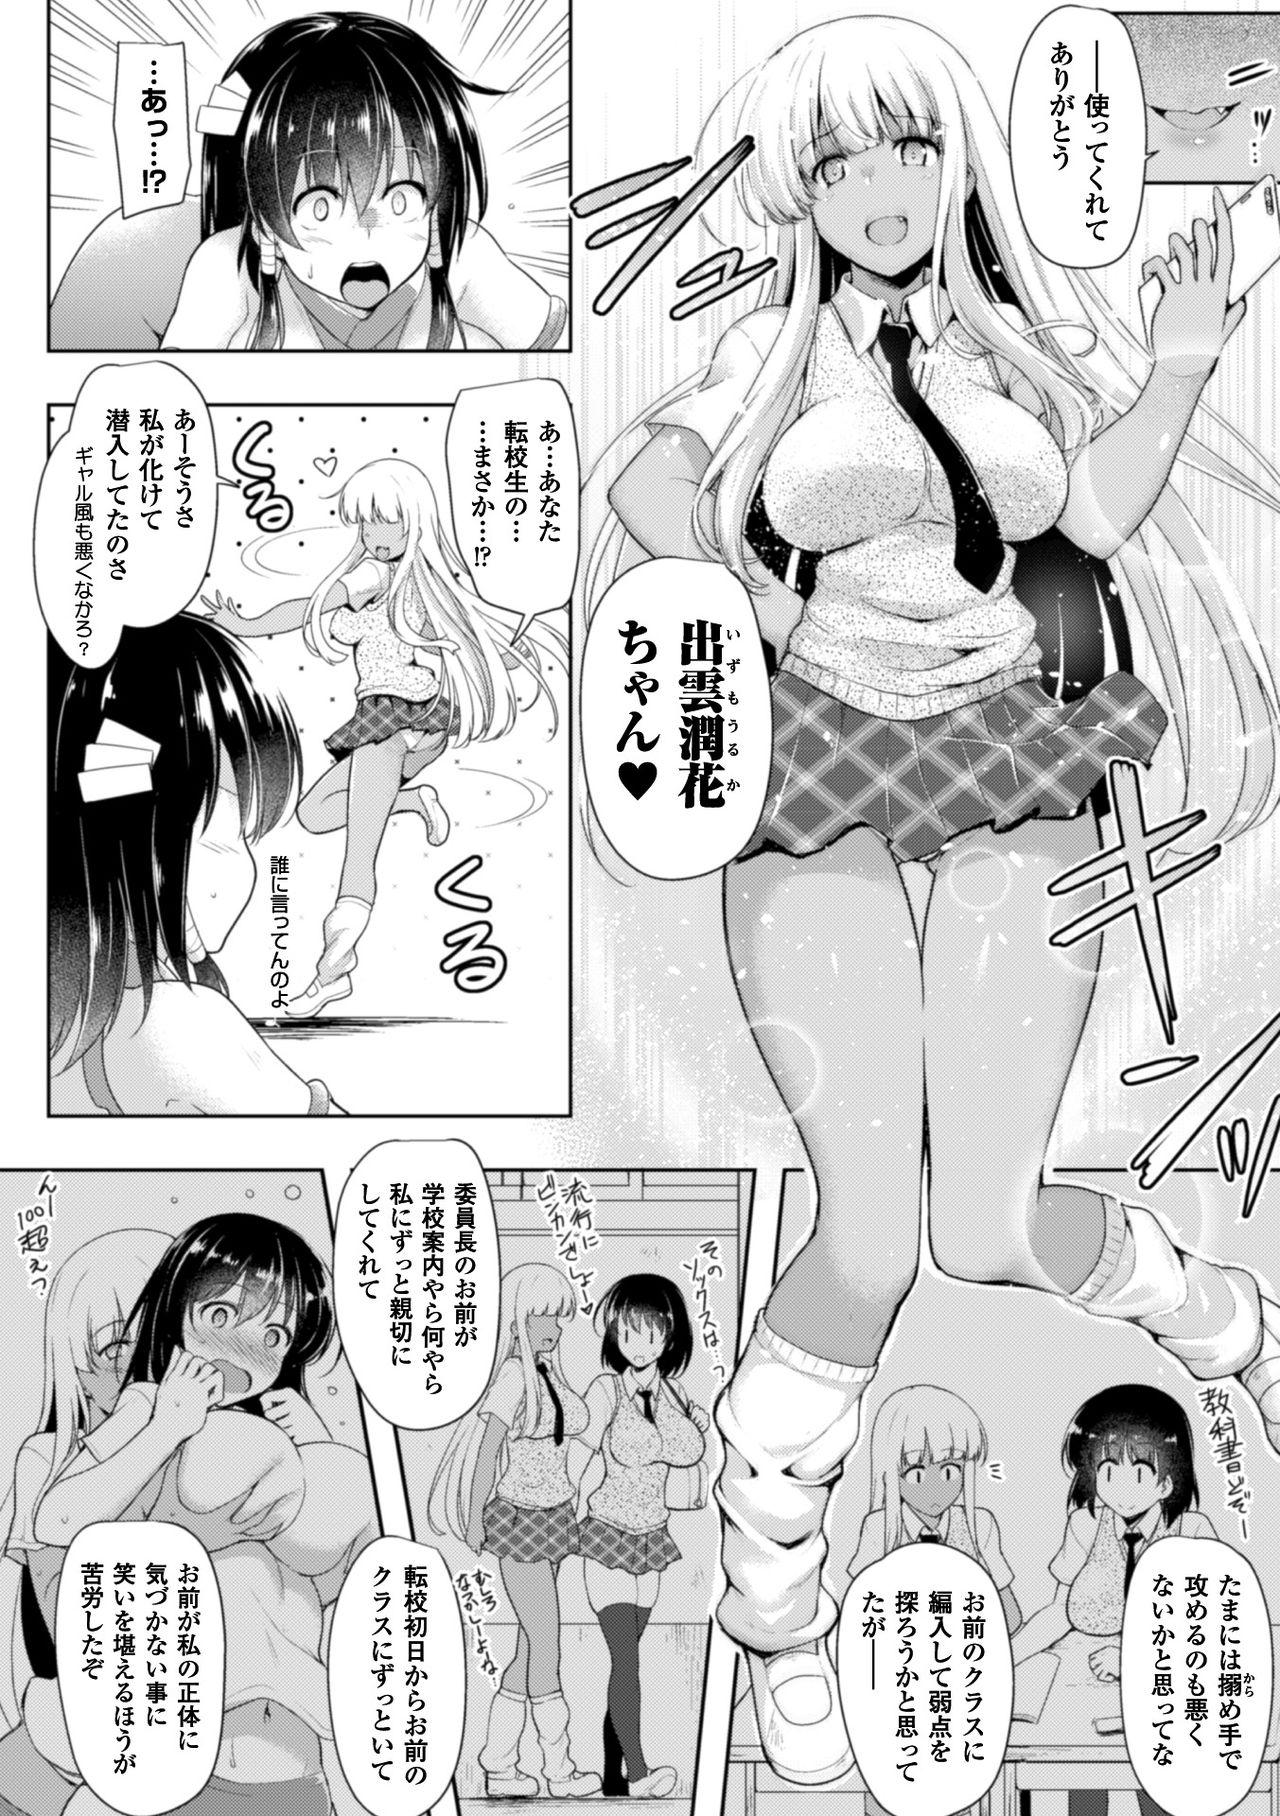 2D Comic Magazine Saimin Appli de Henshin Heroine o Yaritai Houdai! Vol. 1 23